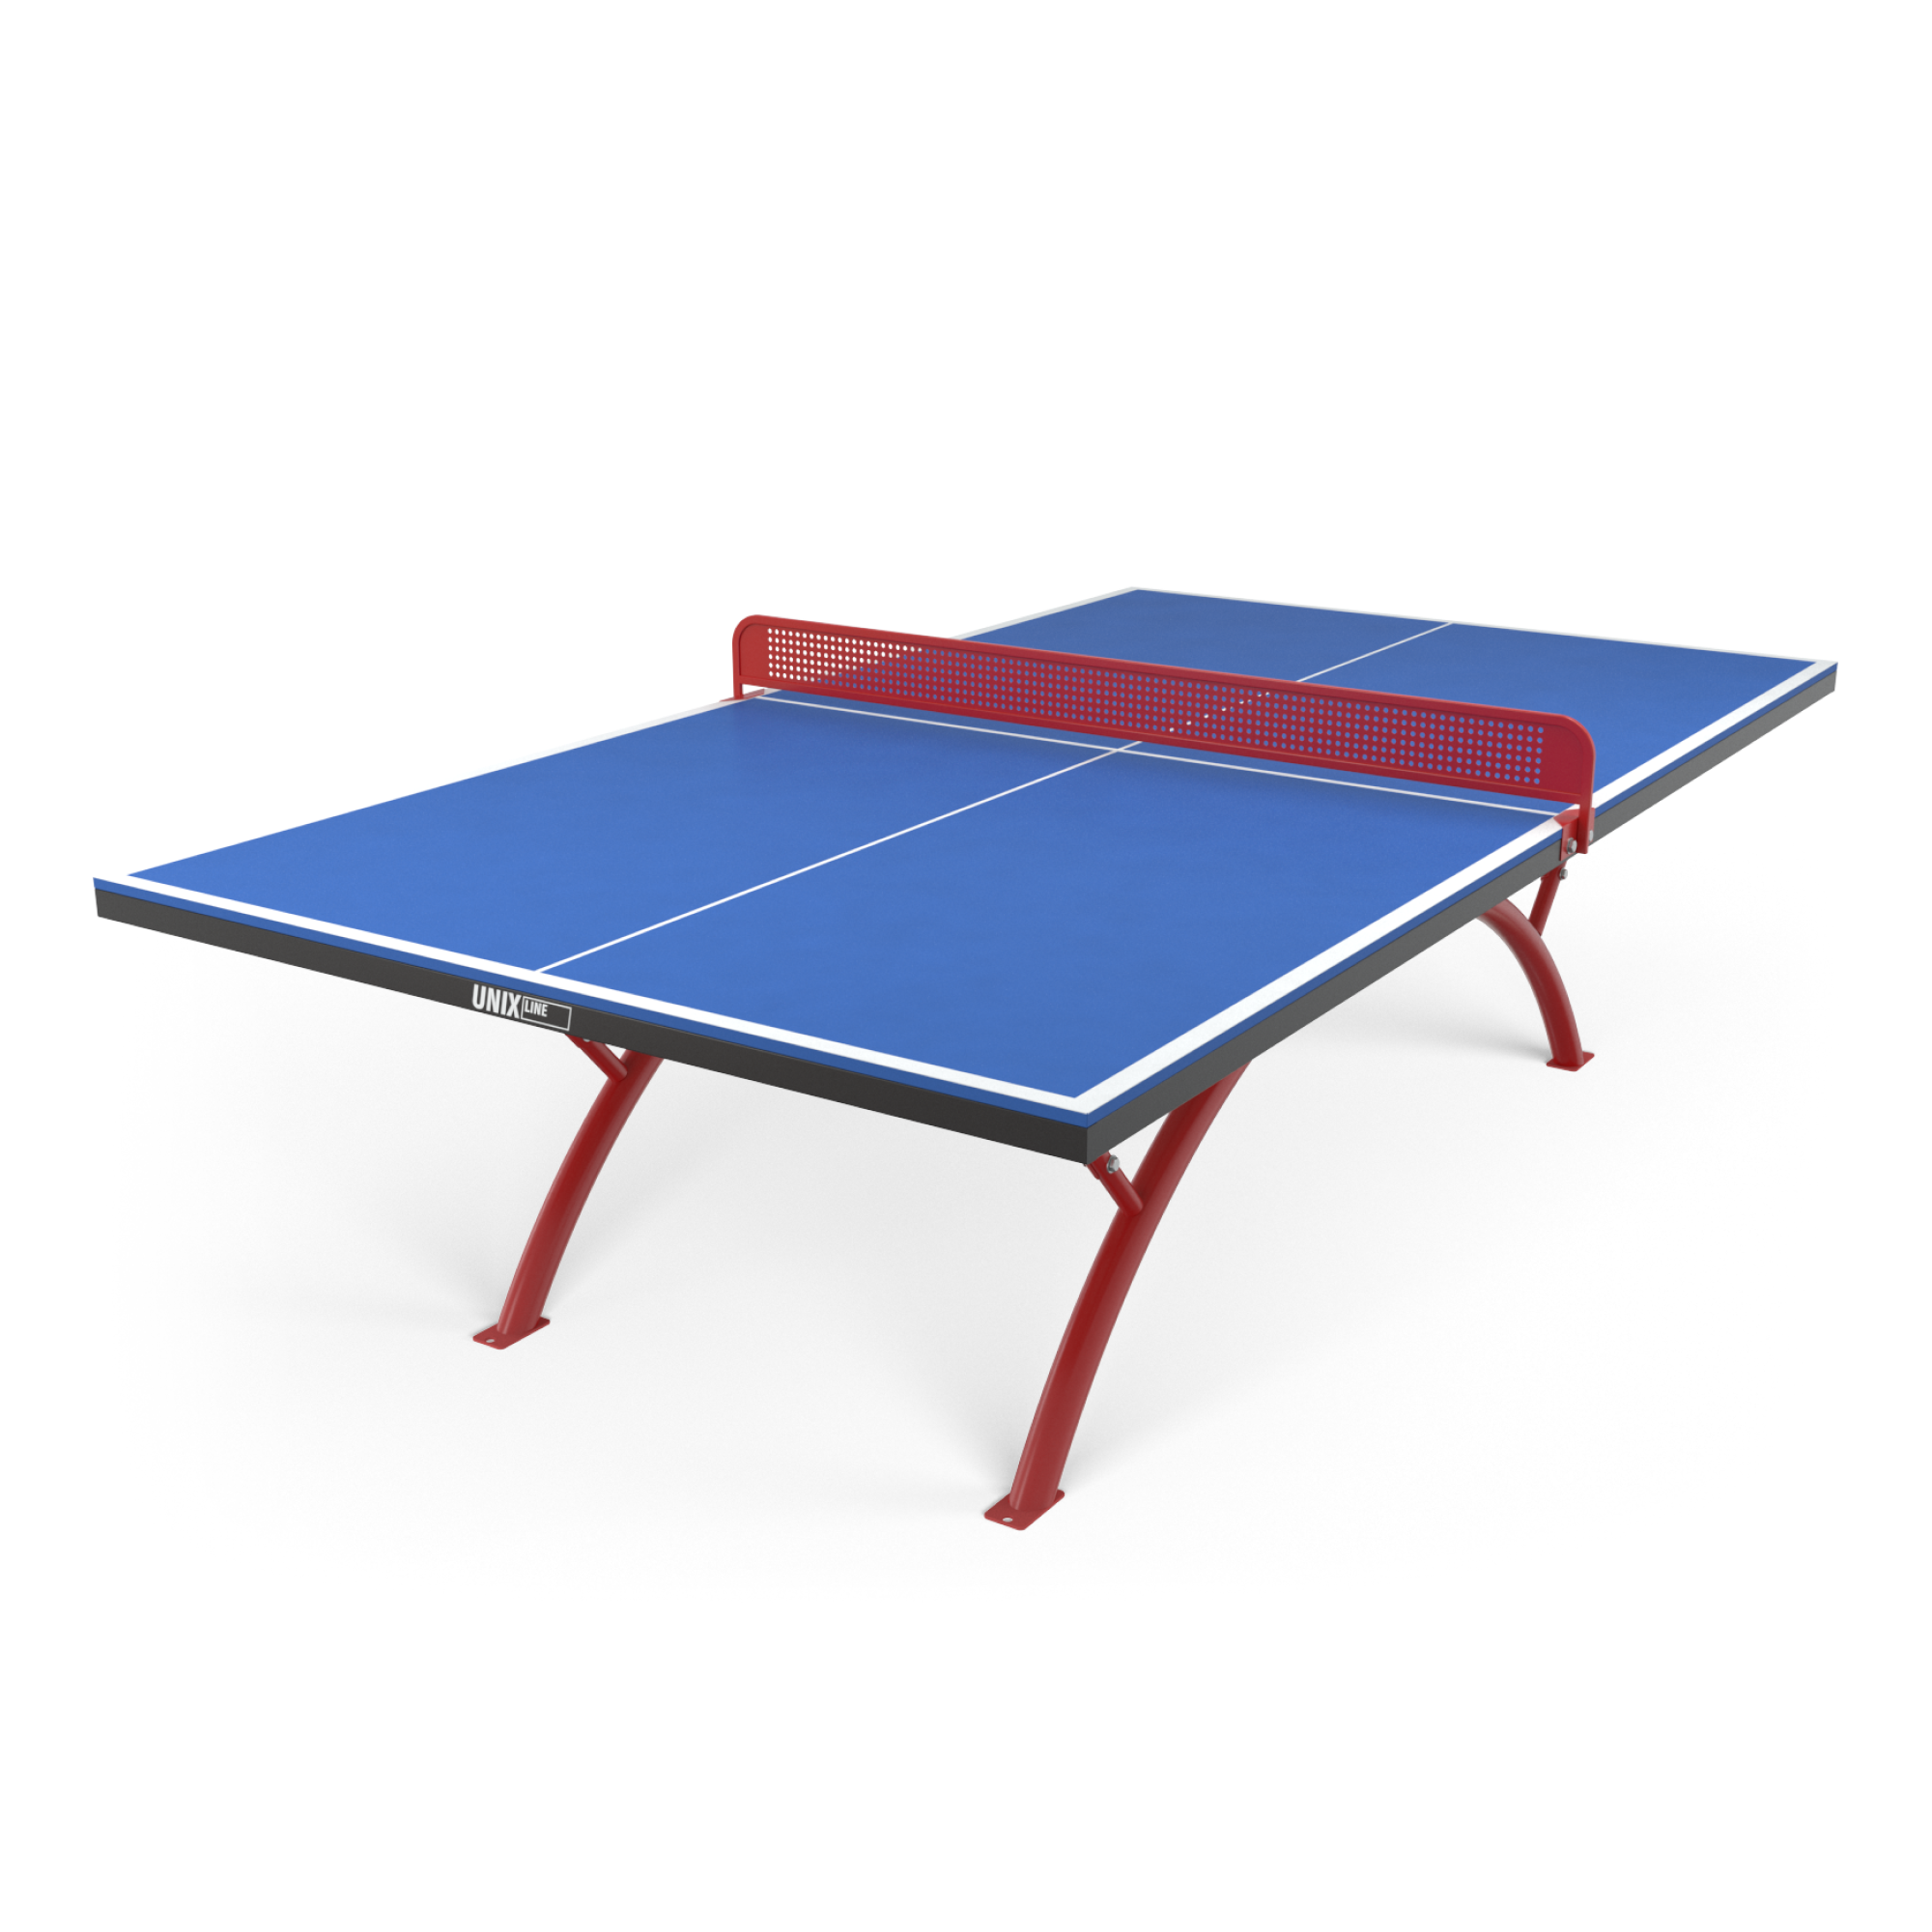 Теннисный стол Unix line Outdoor - 6 мм. Теннисный стол артикул: 2229.8. Аданат теннисный стол антивандальный. Уличный антивандальный стол для настольного тенниса.